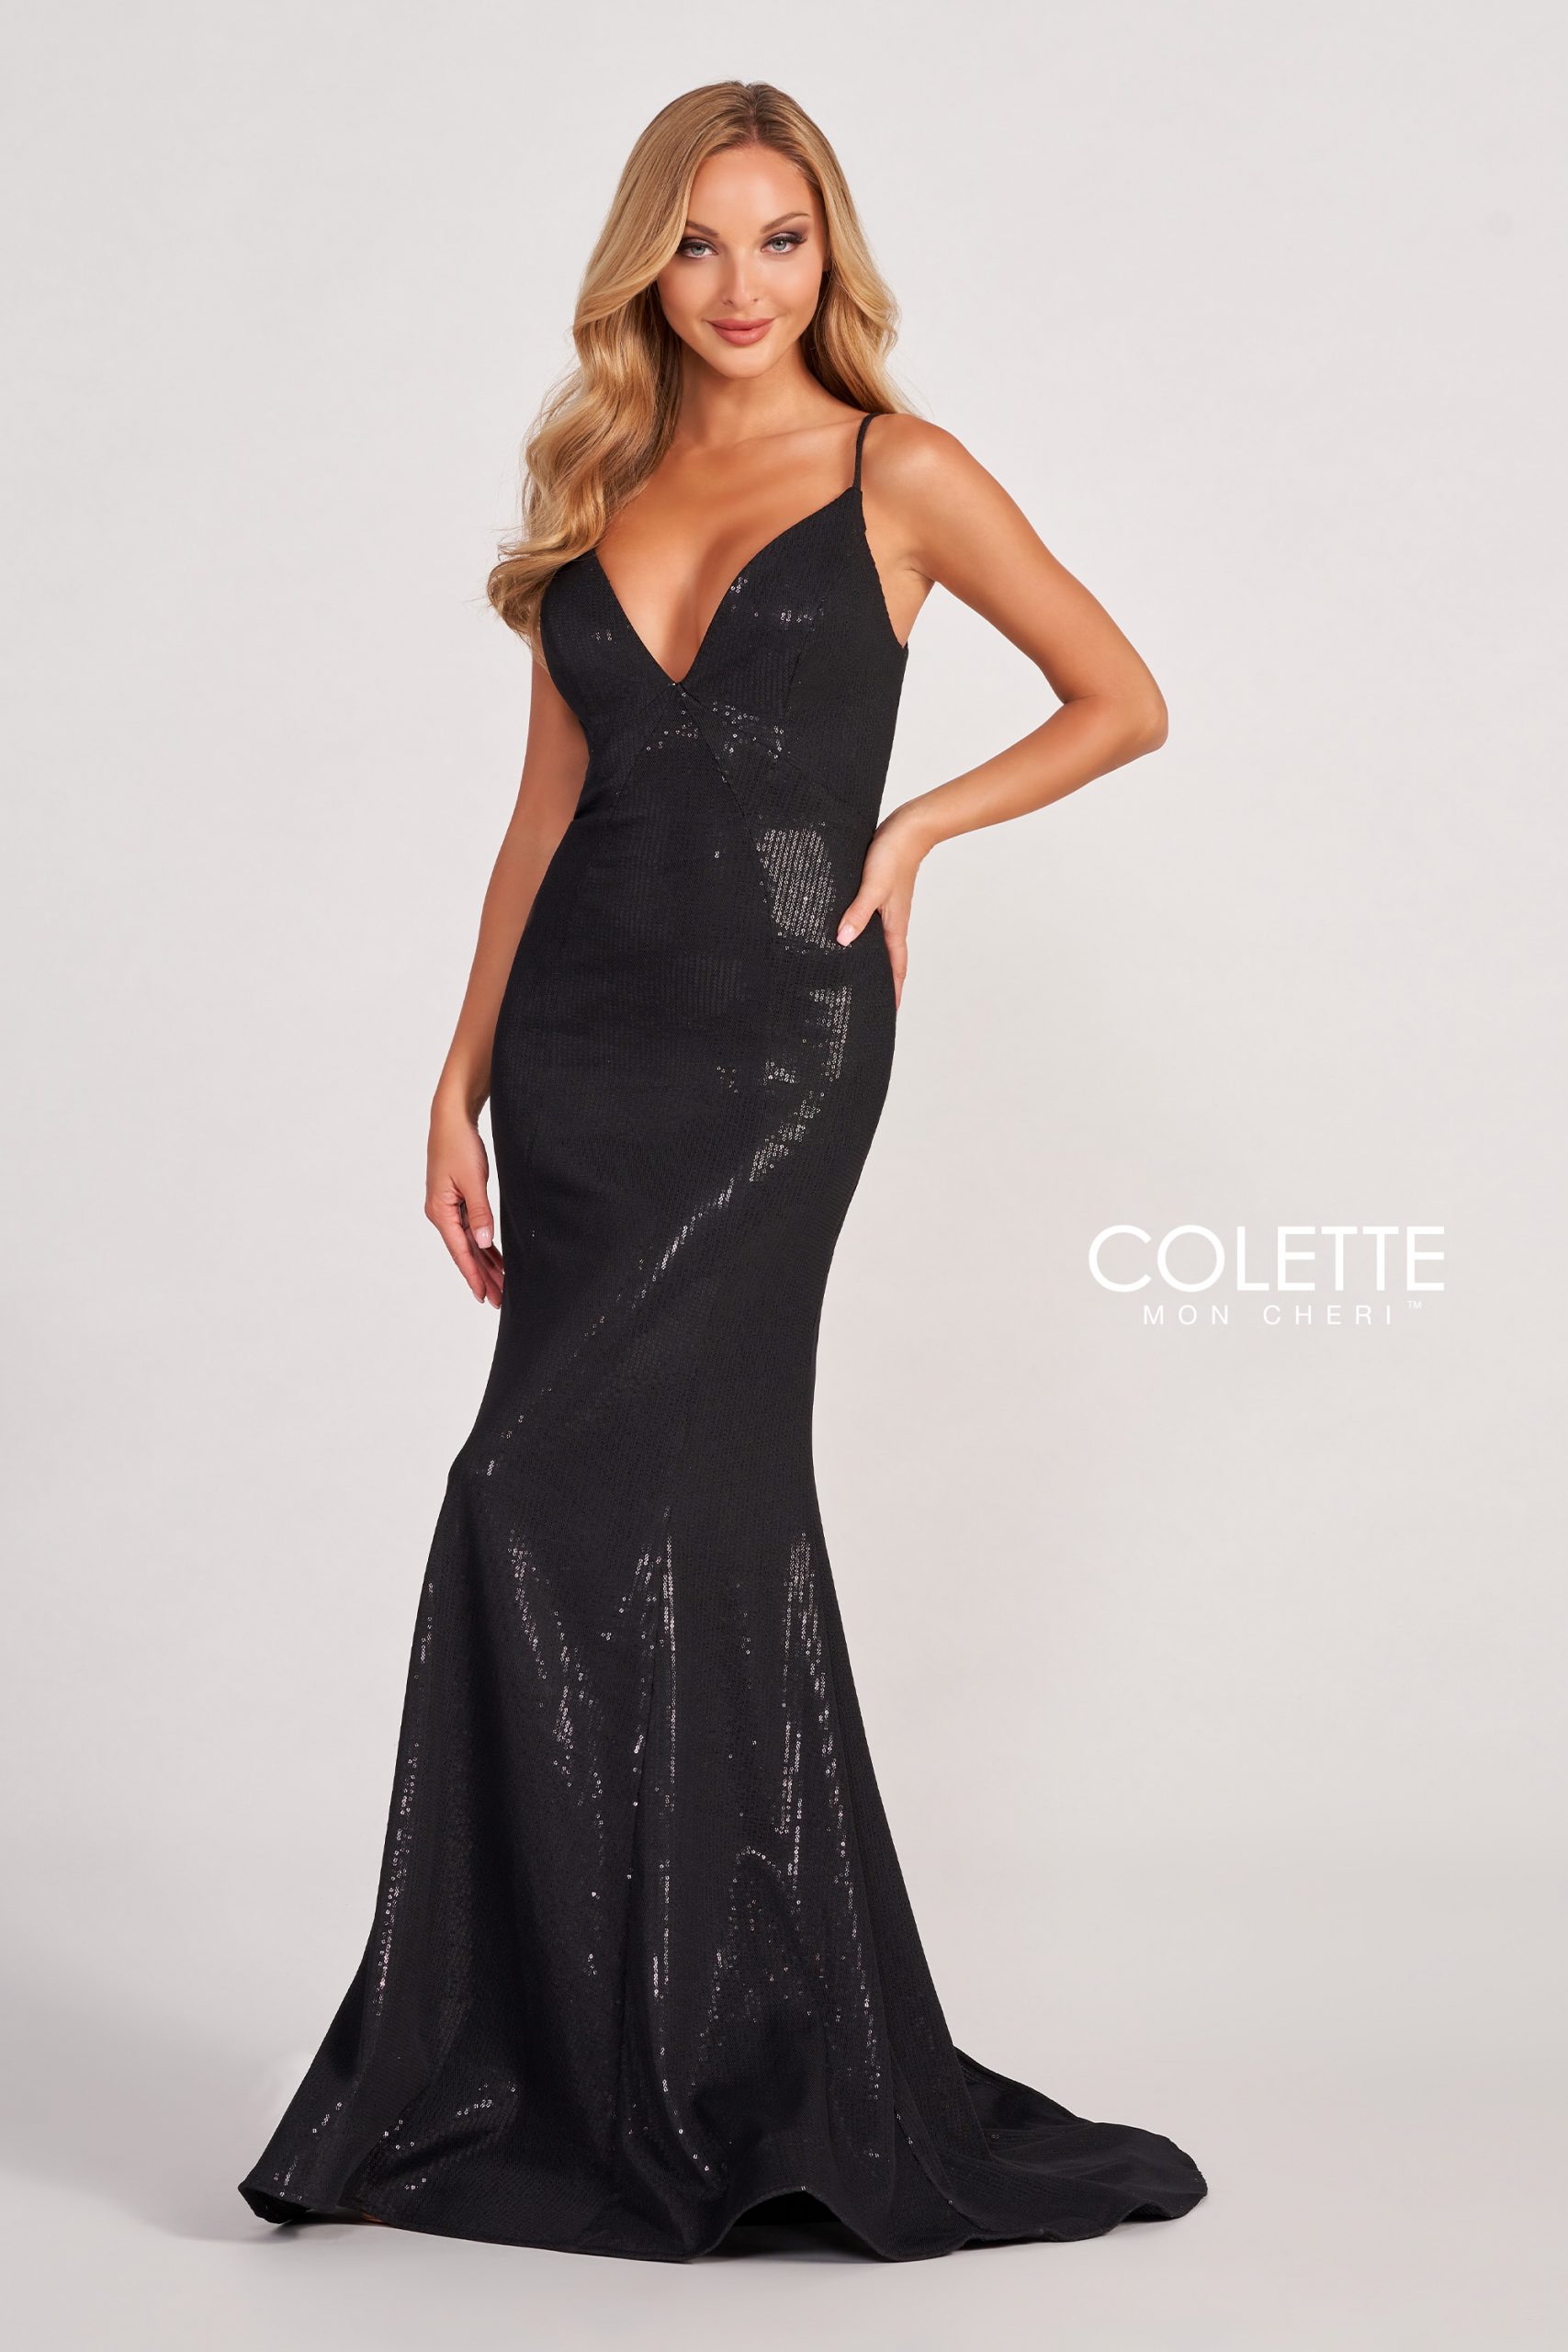 CL2077 - Colette dresses available at Lisa's Bridal Salon